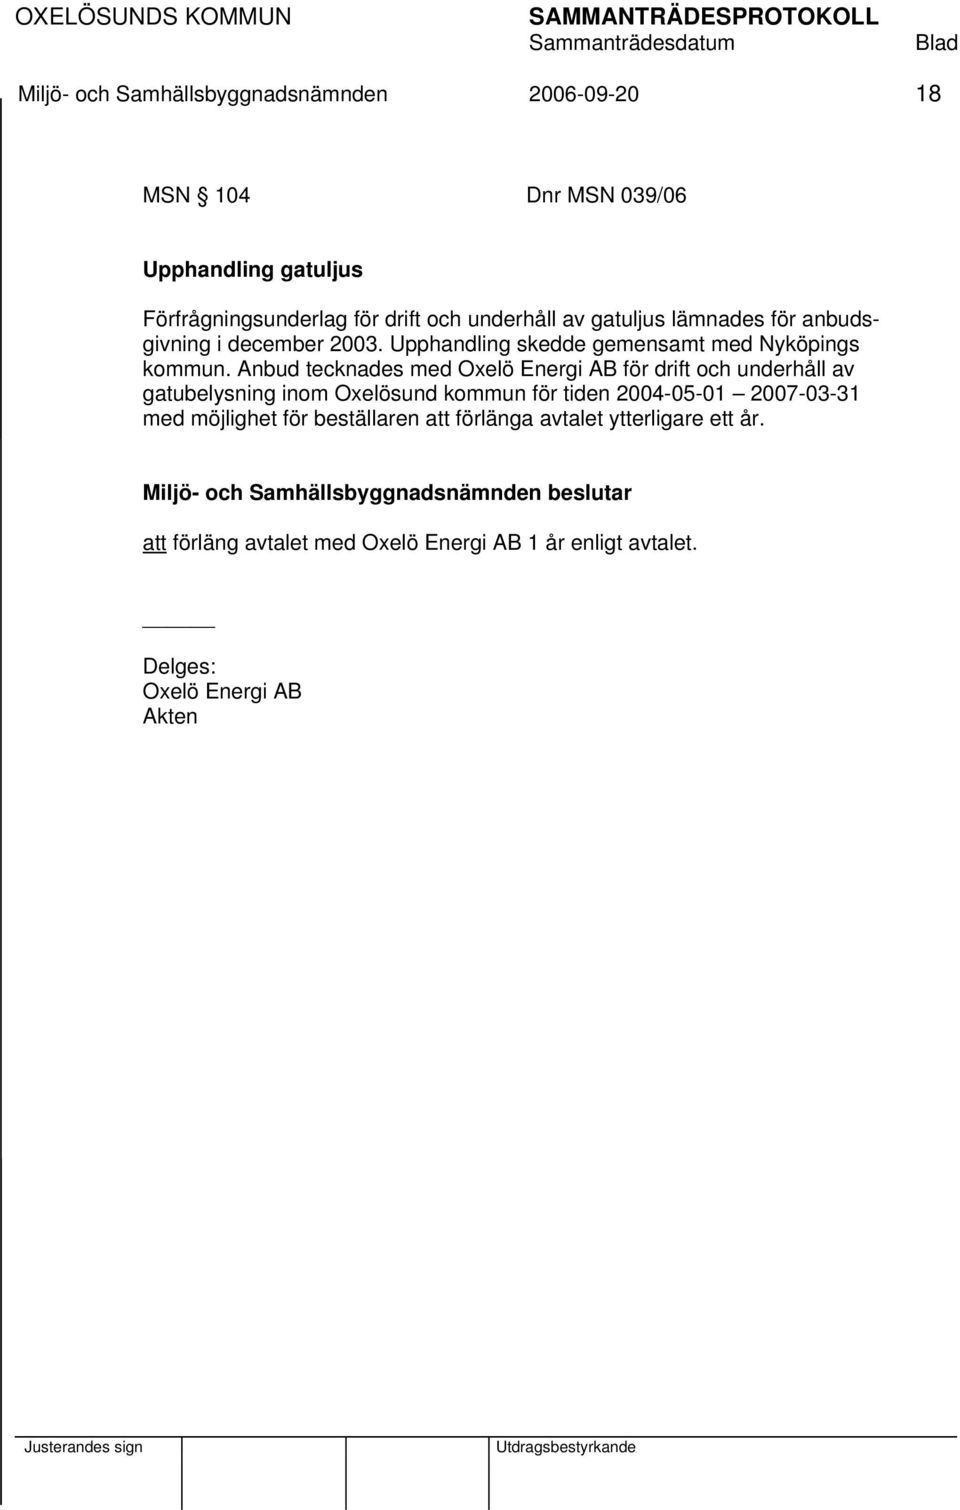 Anbud tecknades med Oxelö Energi AB för drift och underhåll av gatubelysning inom Oxelösund kommun för tiden 2004-05-01 2007-03-31